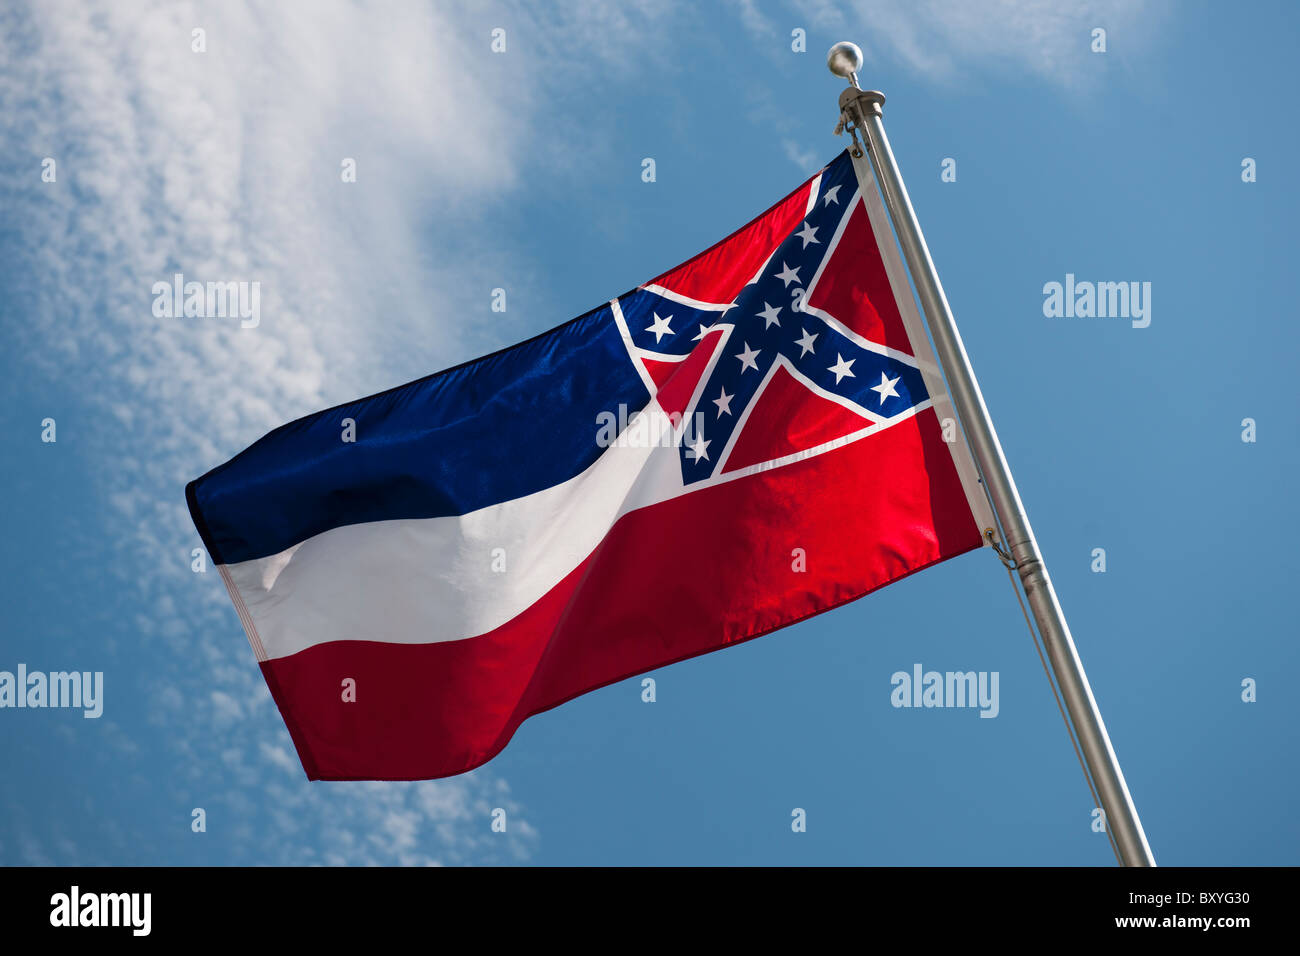 Mississippi State flag against sky Banque D'Images